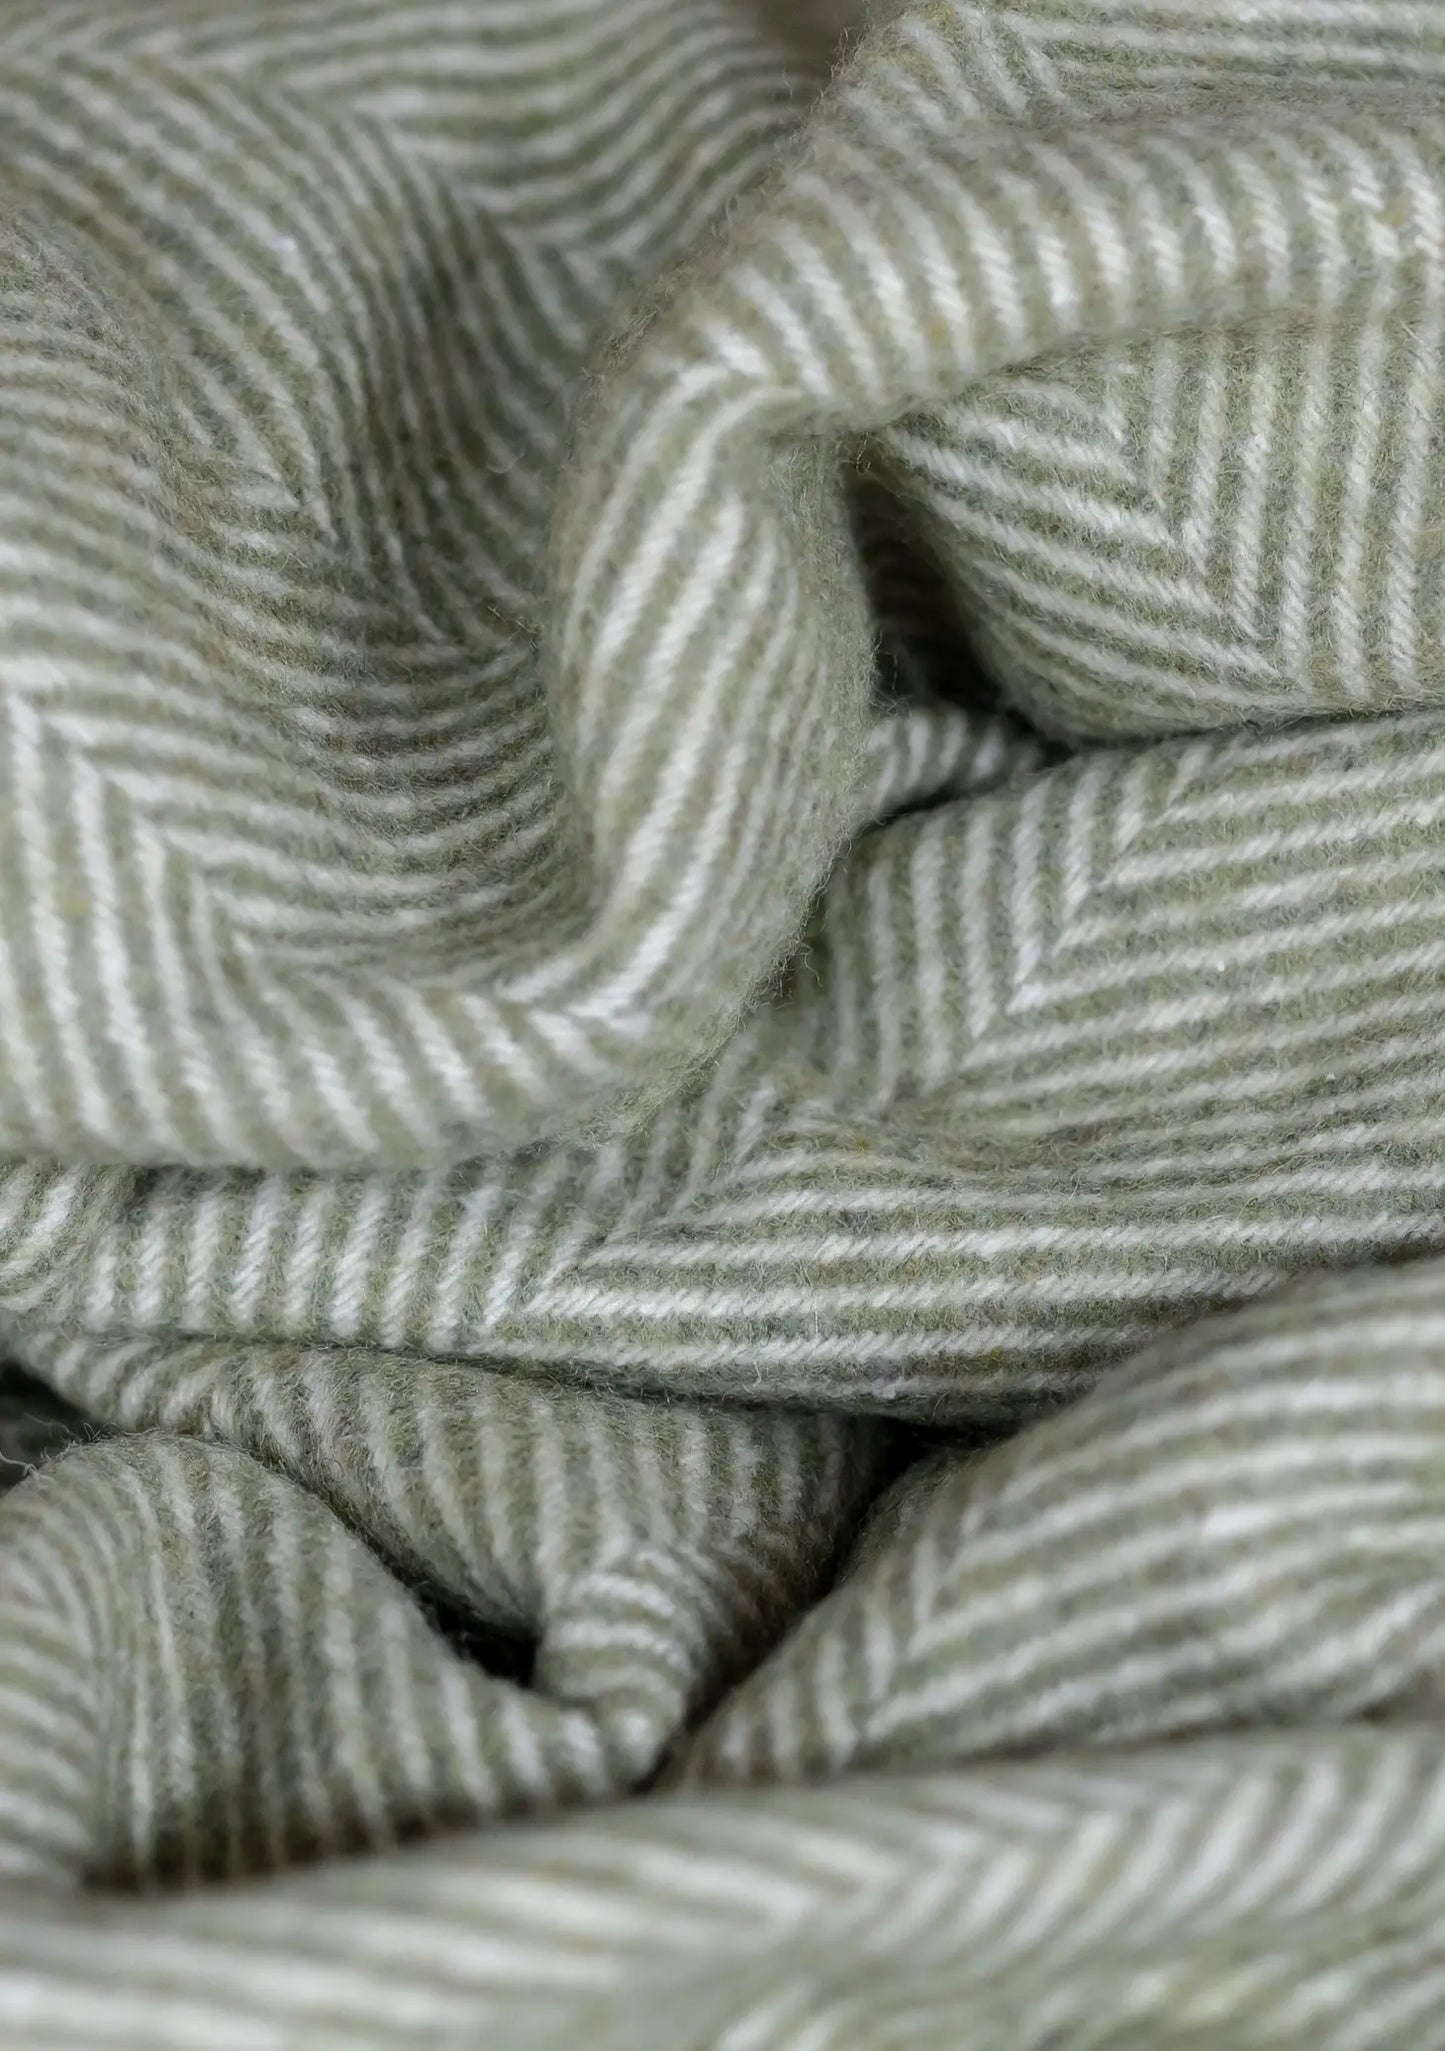 Recycled Wool Small Pet Blanket in Olive Herringbone